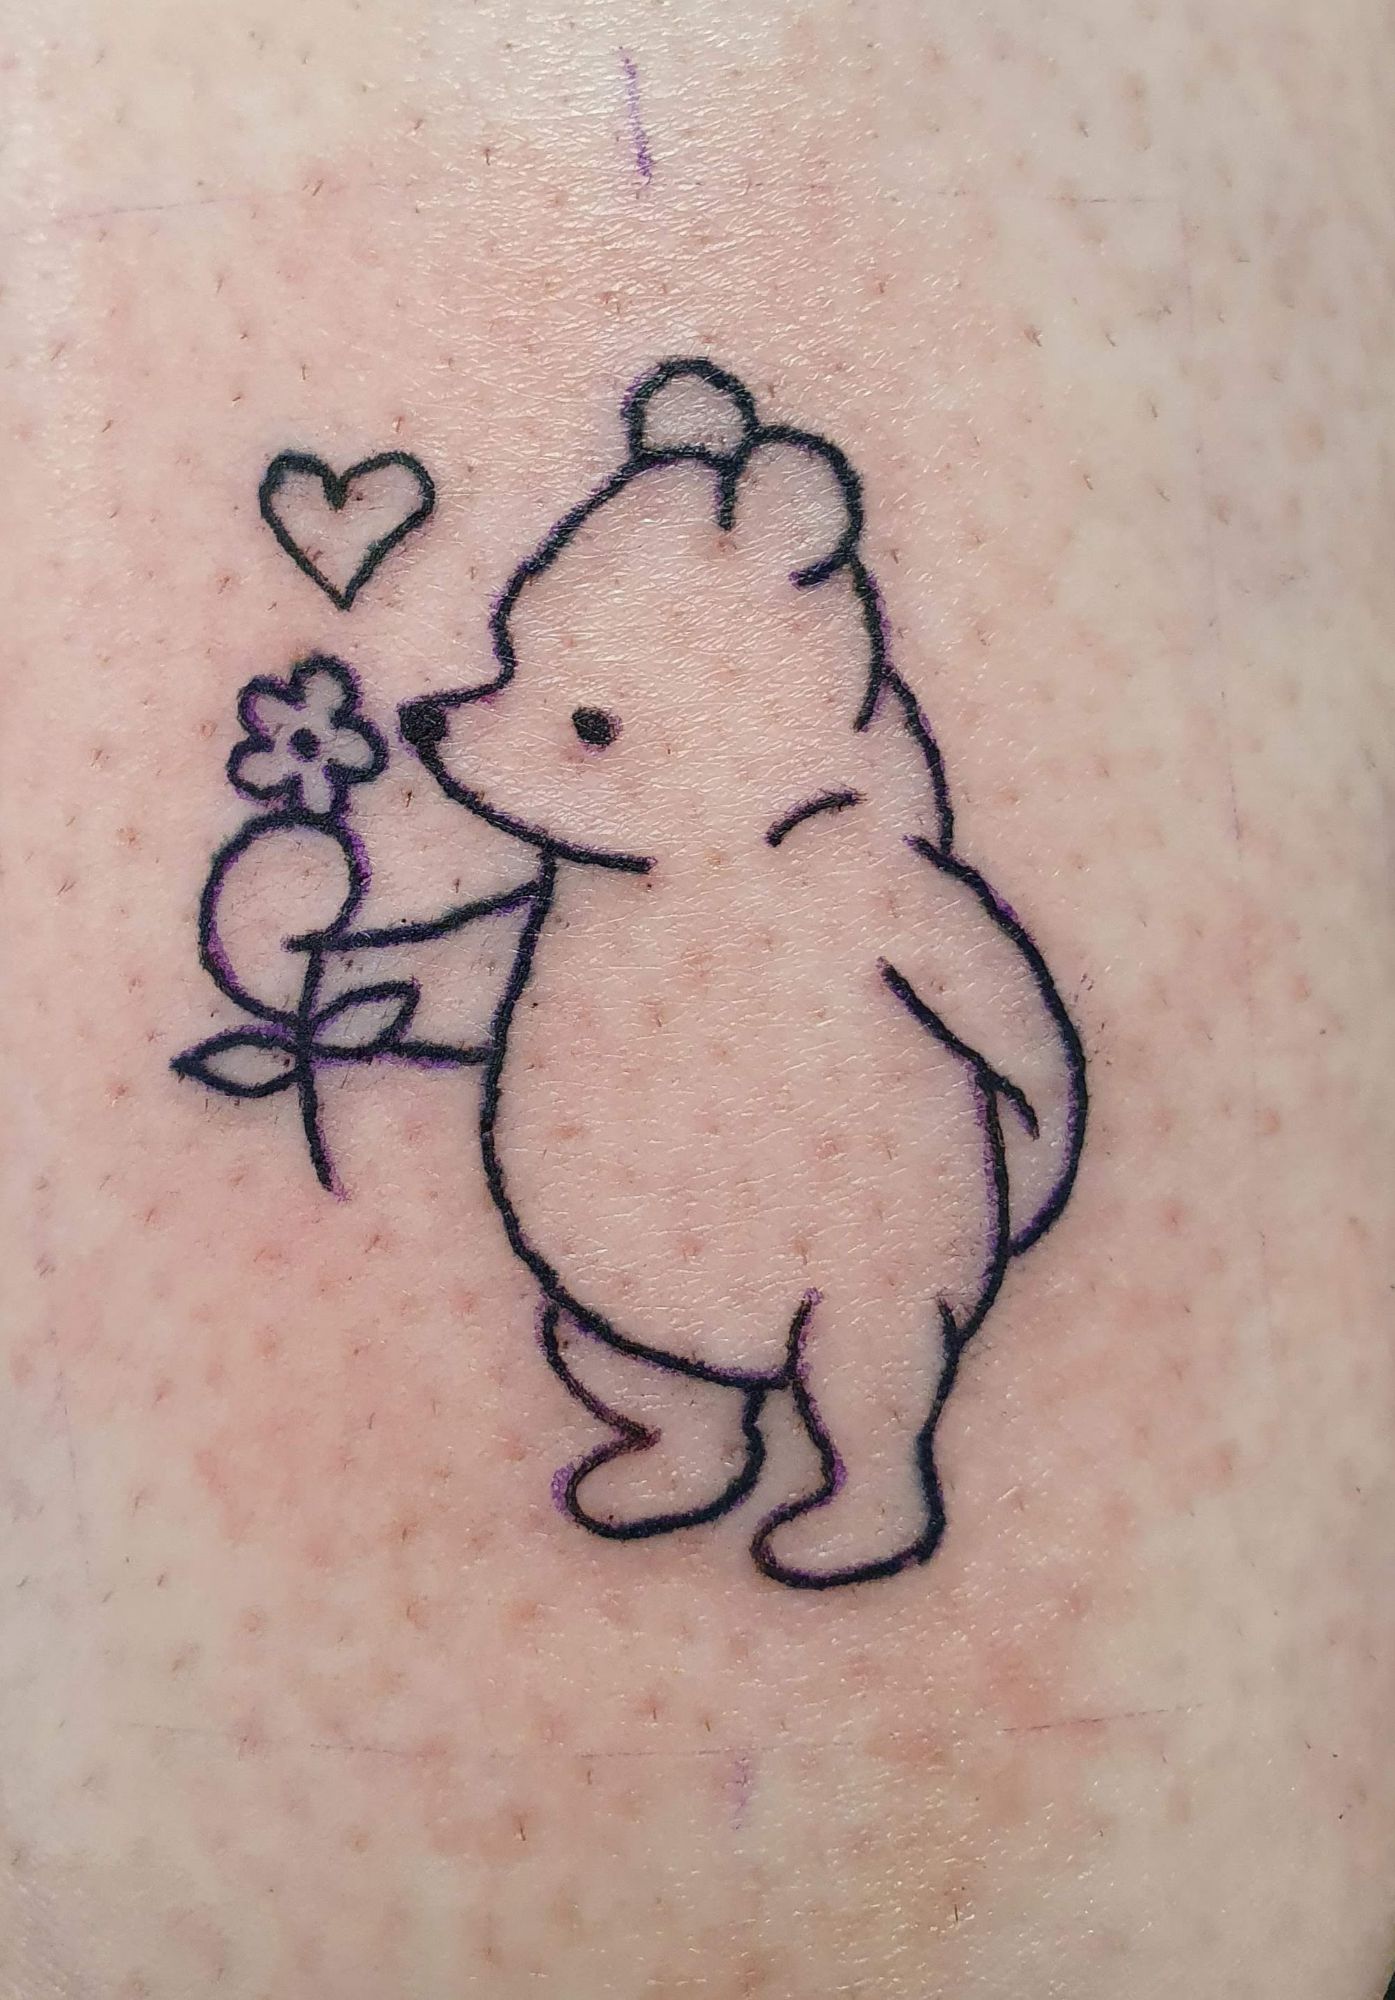 poo bear tattoo